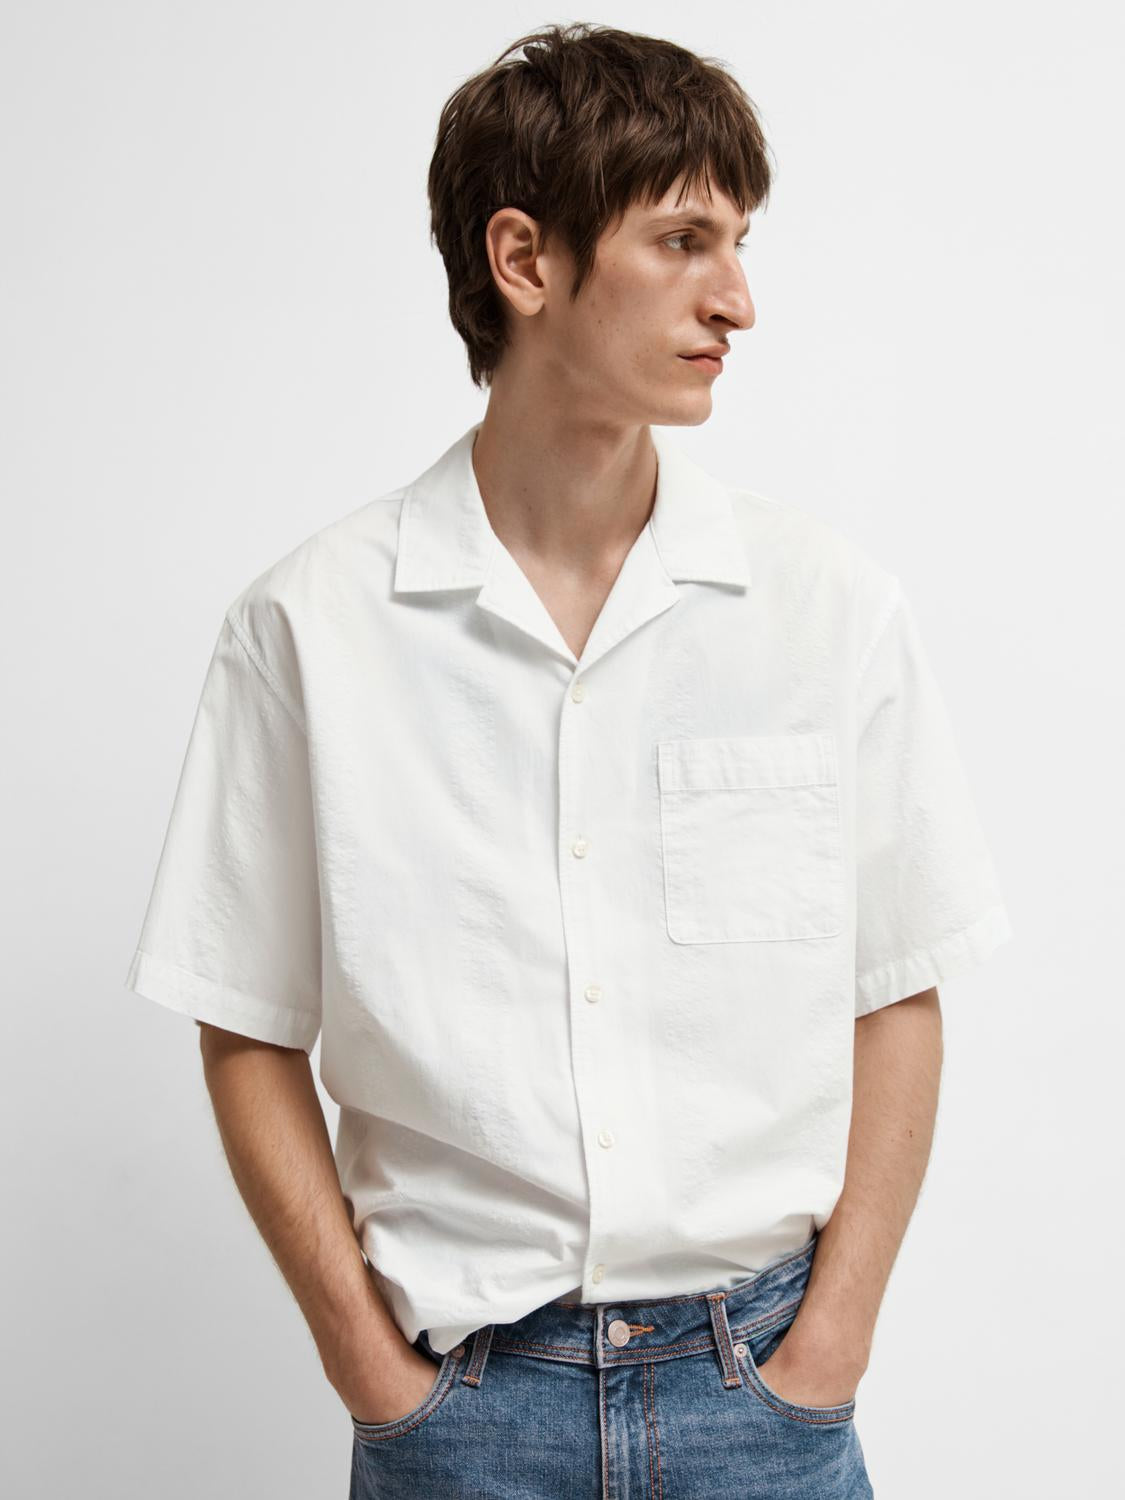 Boxy Kyle skjorte med kort arm  - Hvit/ Bright White